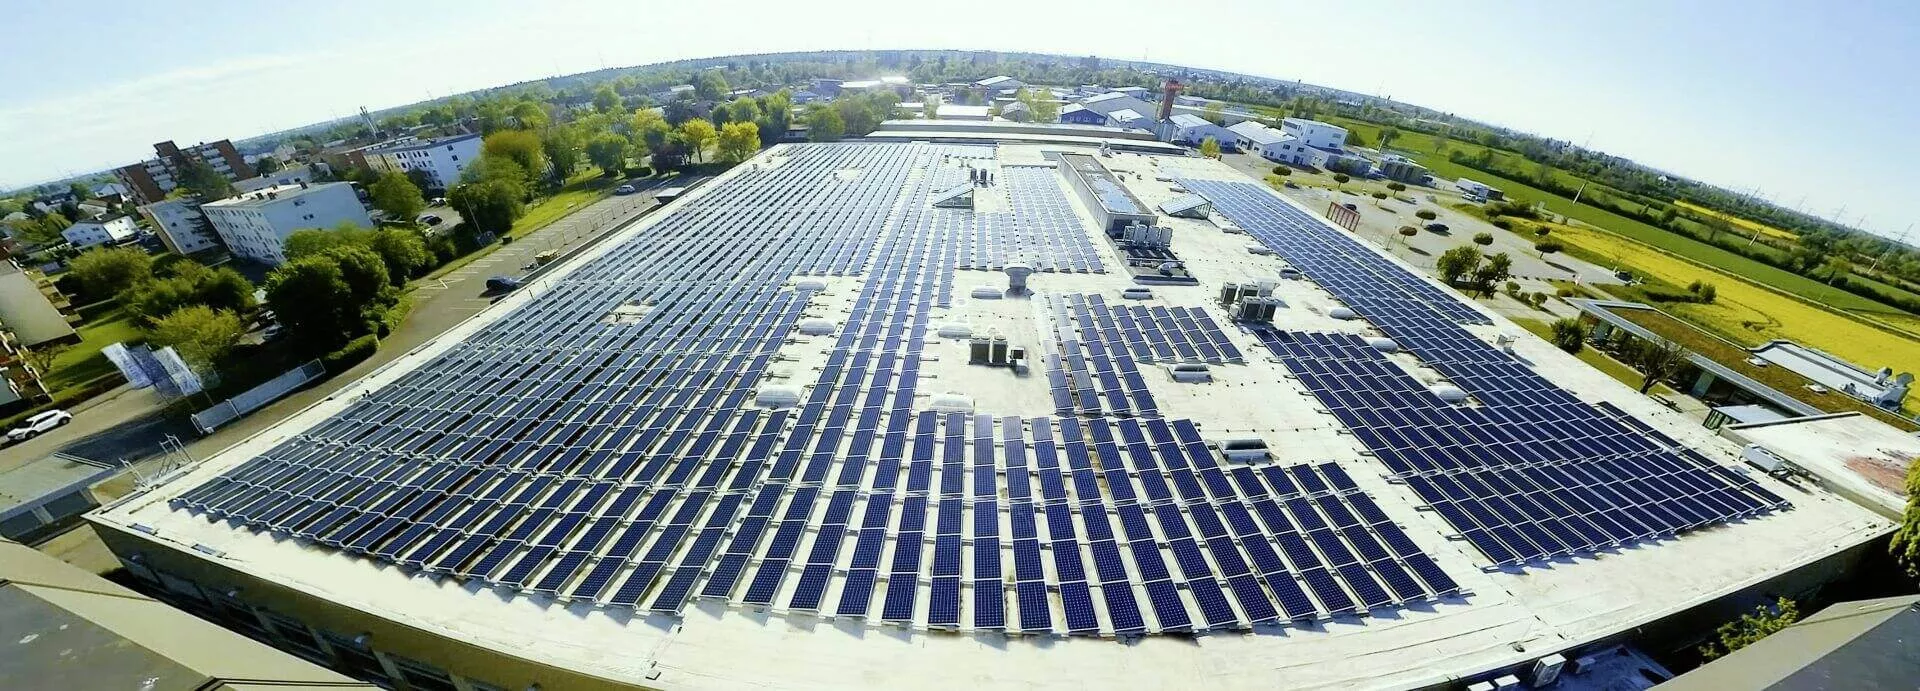 Die 3800qm große Dachsolaranlage liefert geschätzte 766.865 kWh im Jahr, mit SunPower Maxeon’s marktbester Garantieleistung über 25 Jahre. Foto: GERWIN MEDIA GmbH/ www.gerwinmedia.de.